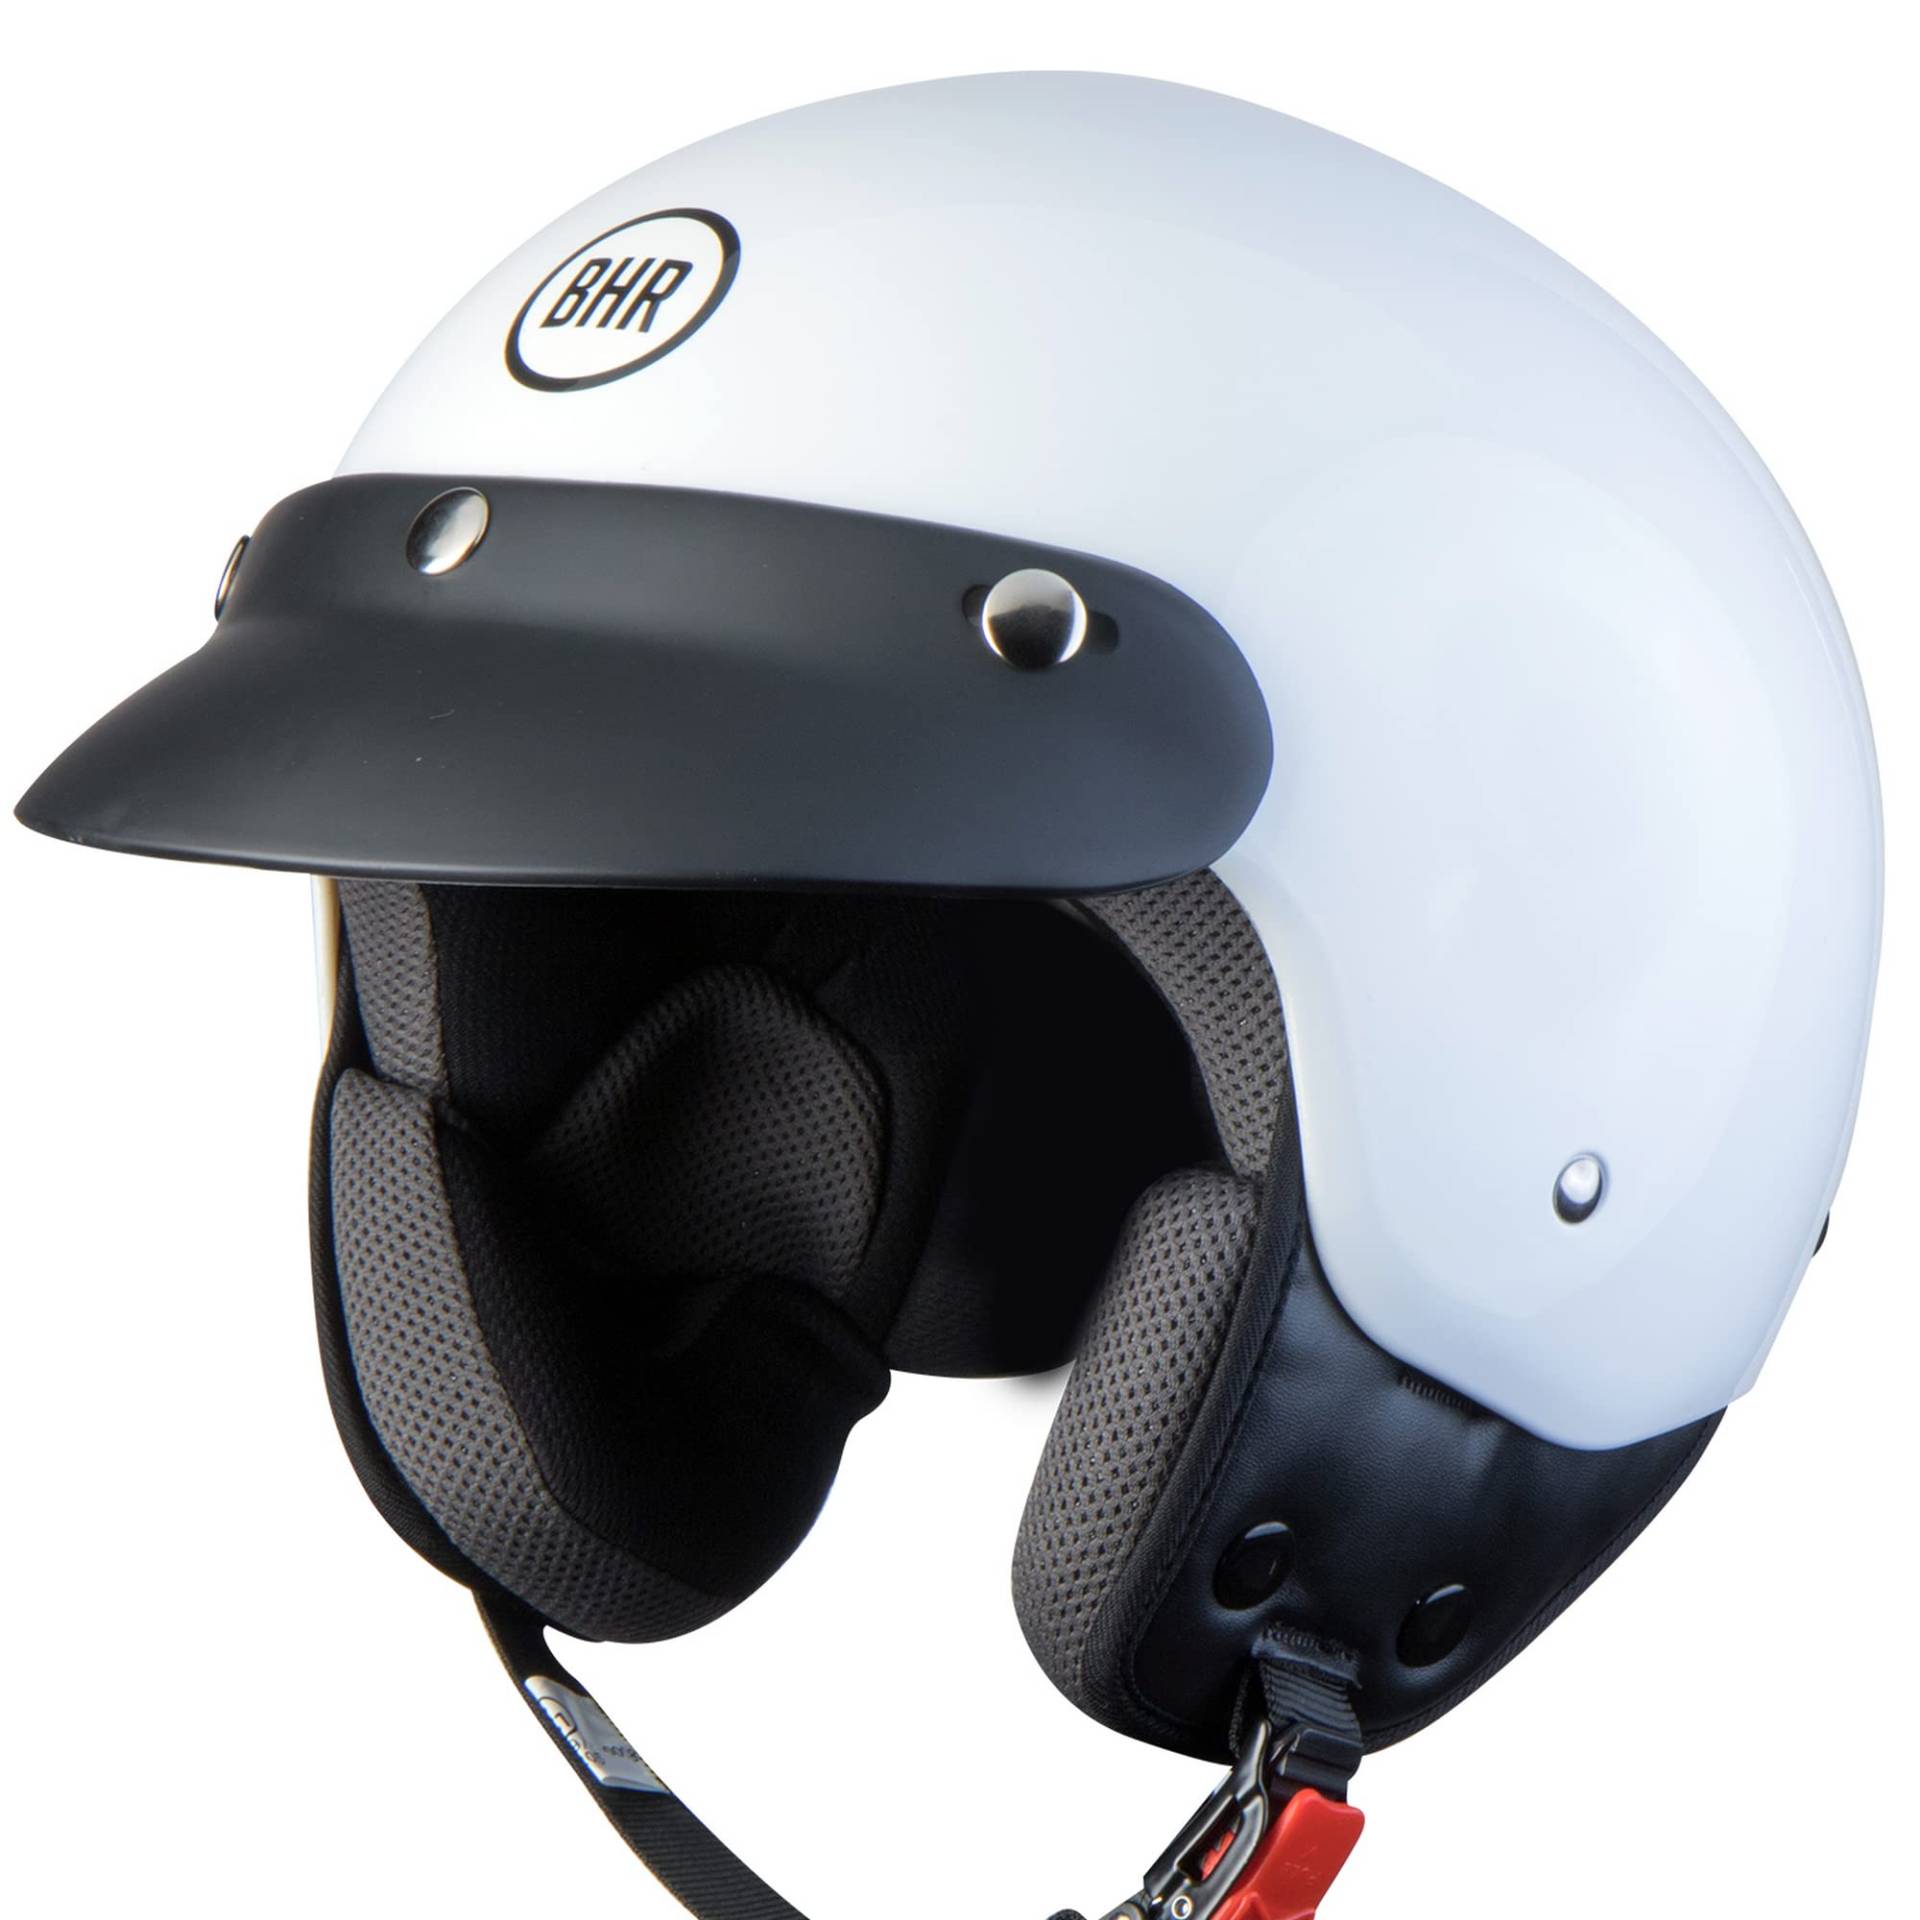 BHR Demi-Jet Helm 803 SIMPLY, Praktischer Rollerhelm mit ECE-Zulassung, Motorrad-Jet-Helm mit abnehmbarem Gesichtspolster, WEISS, XL von BHR